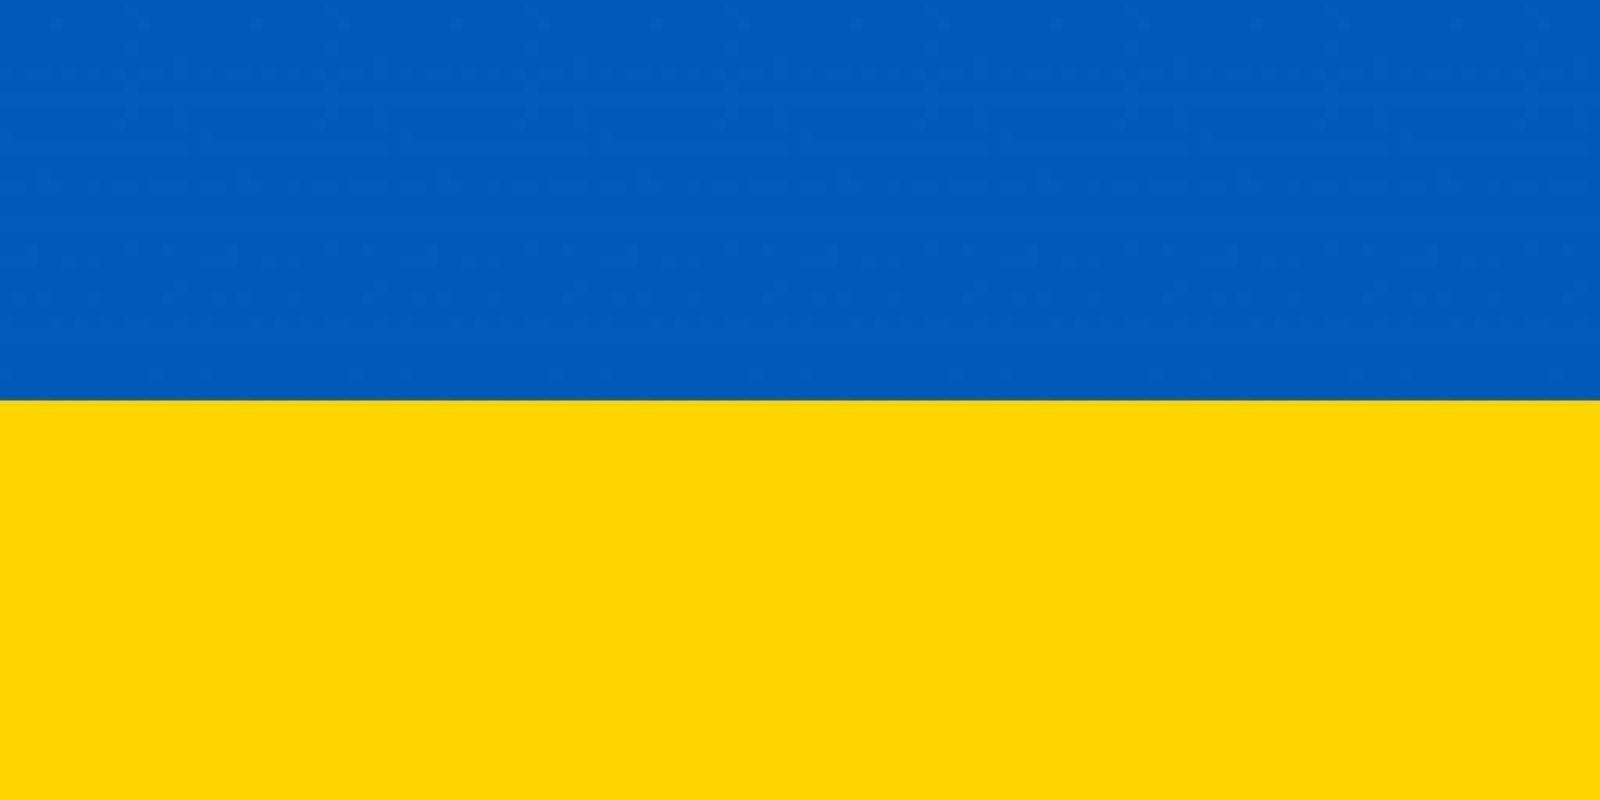 In Solidarität mit allen Friedfertigen sind wir im Herzen bei den Menschen in der Ukraine